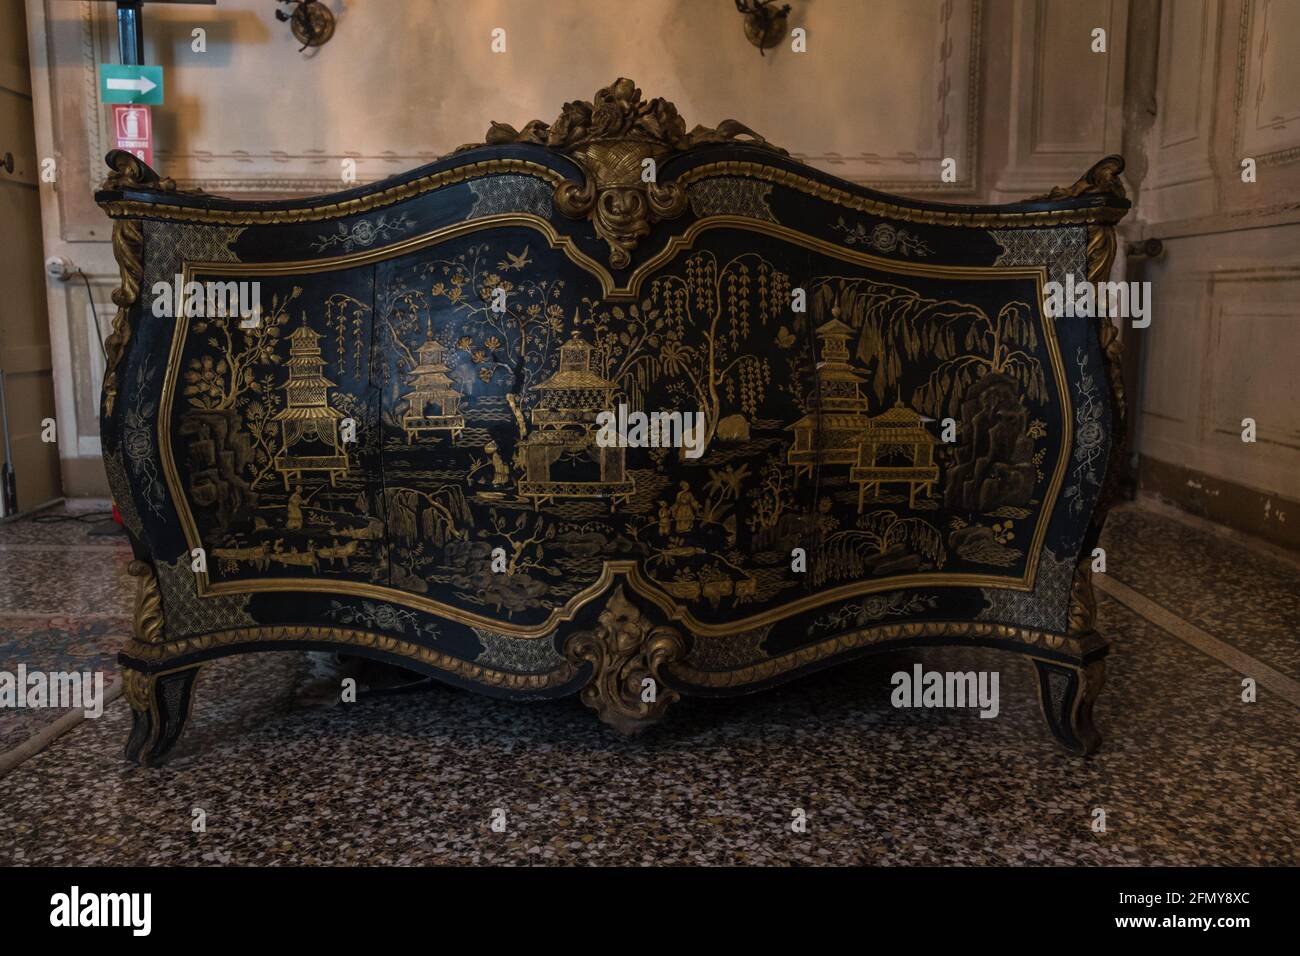 Dekoriertes Bett in einem Zimmer in der Villa Durazzo, wo einst Königin Margherita wohnte. Dieser 'palazzo' ist heute ein Museum in Santa Margherita Ligure. Stockfoto